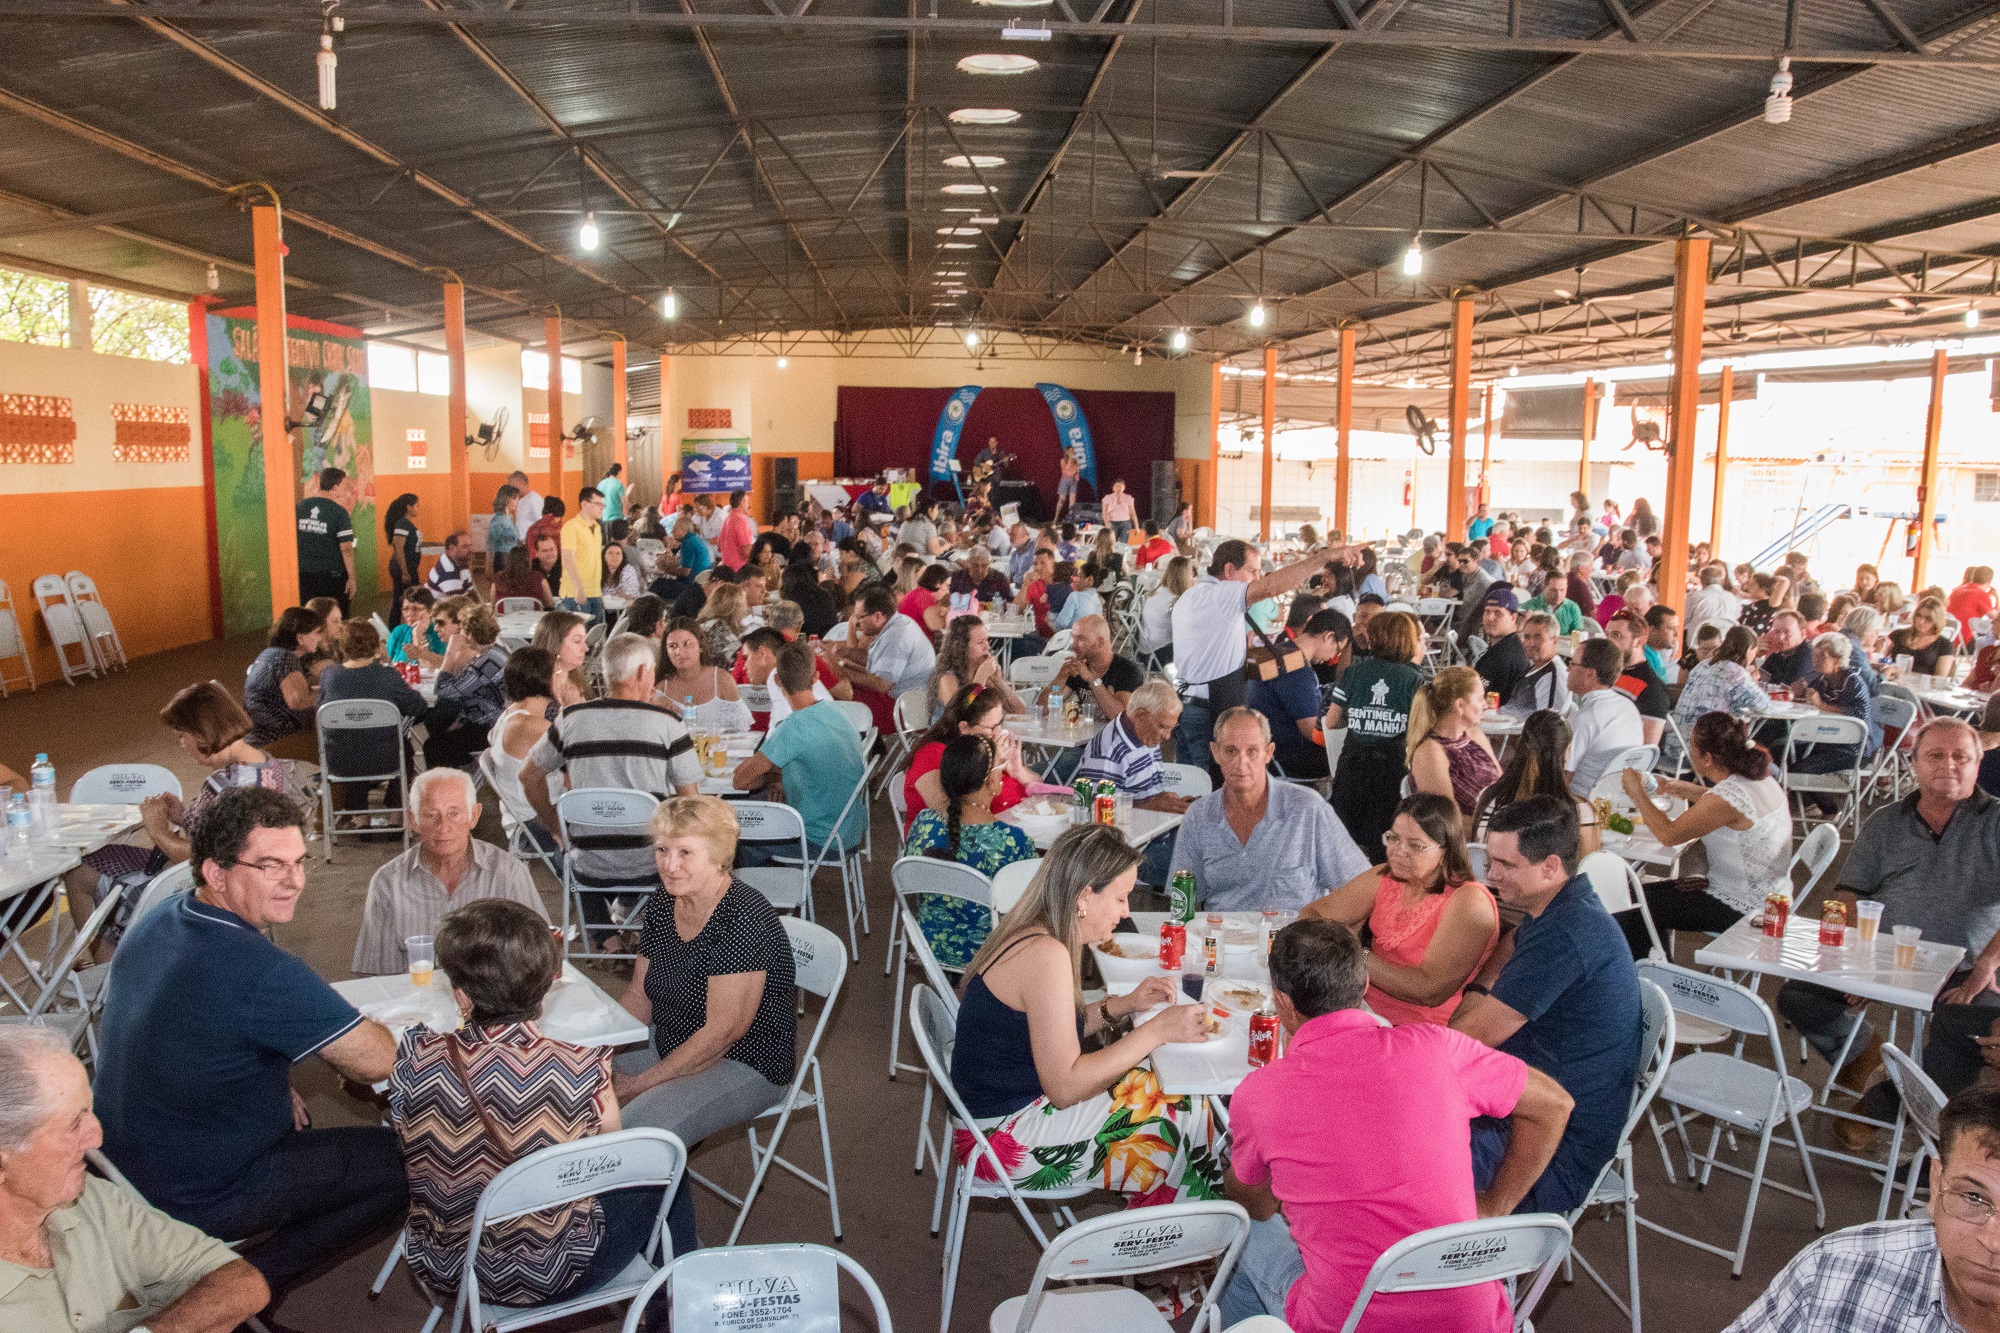 Almoço reuniu cerca de 300 pessoas e teve renda completamente revertida ao Hospital São Lourenço de Urupês. Foto: Luís Fernando da Silva / Prefeitura Municipal de Urupês